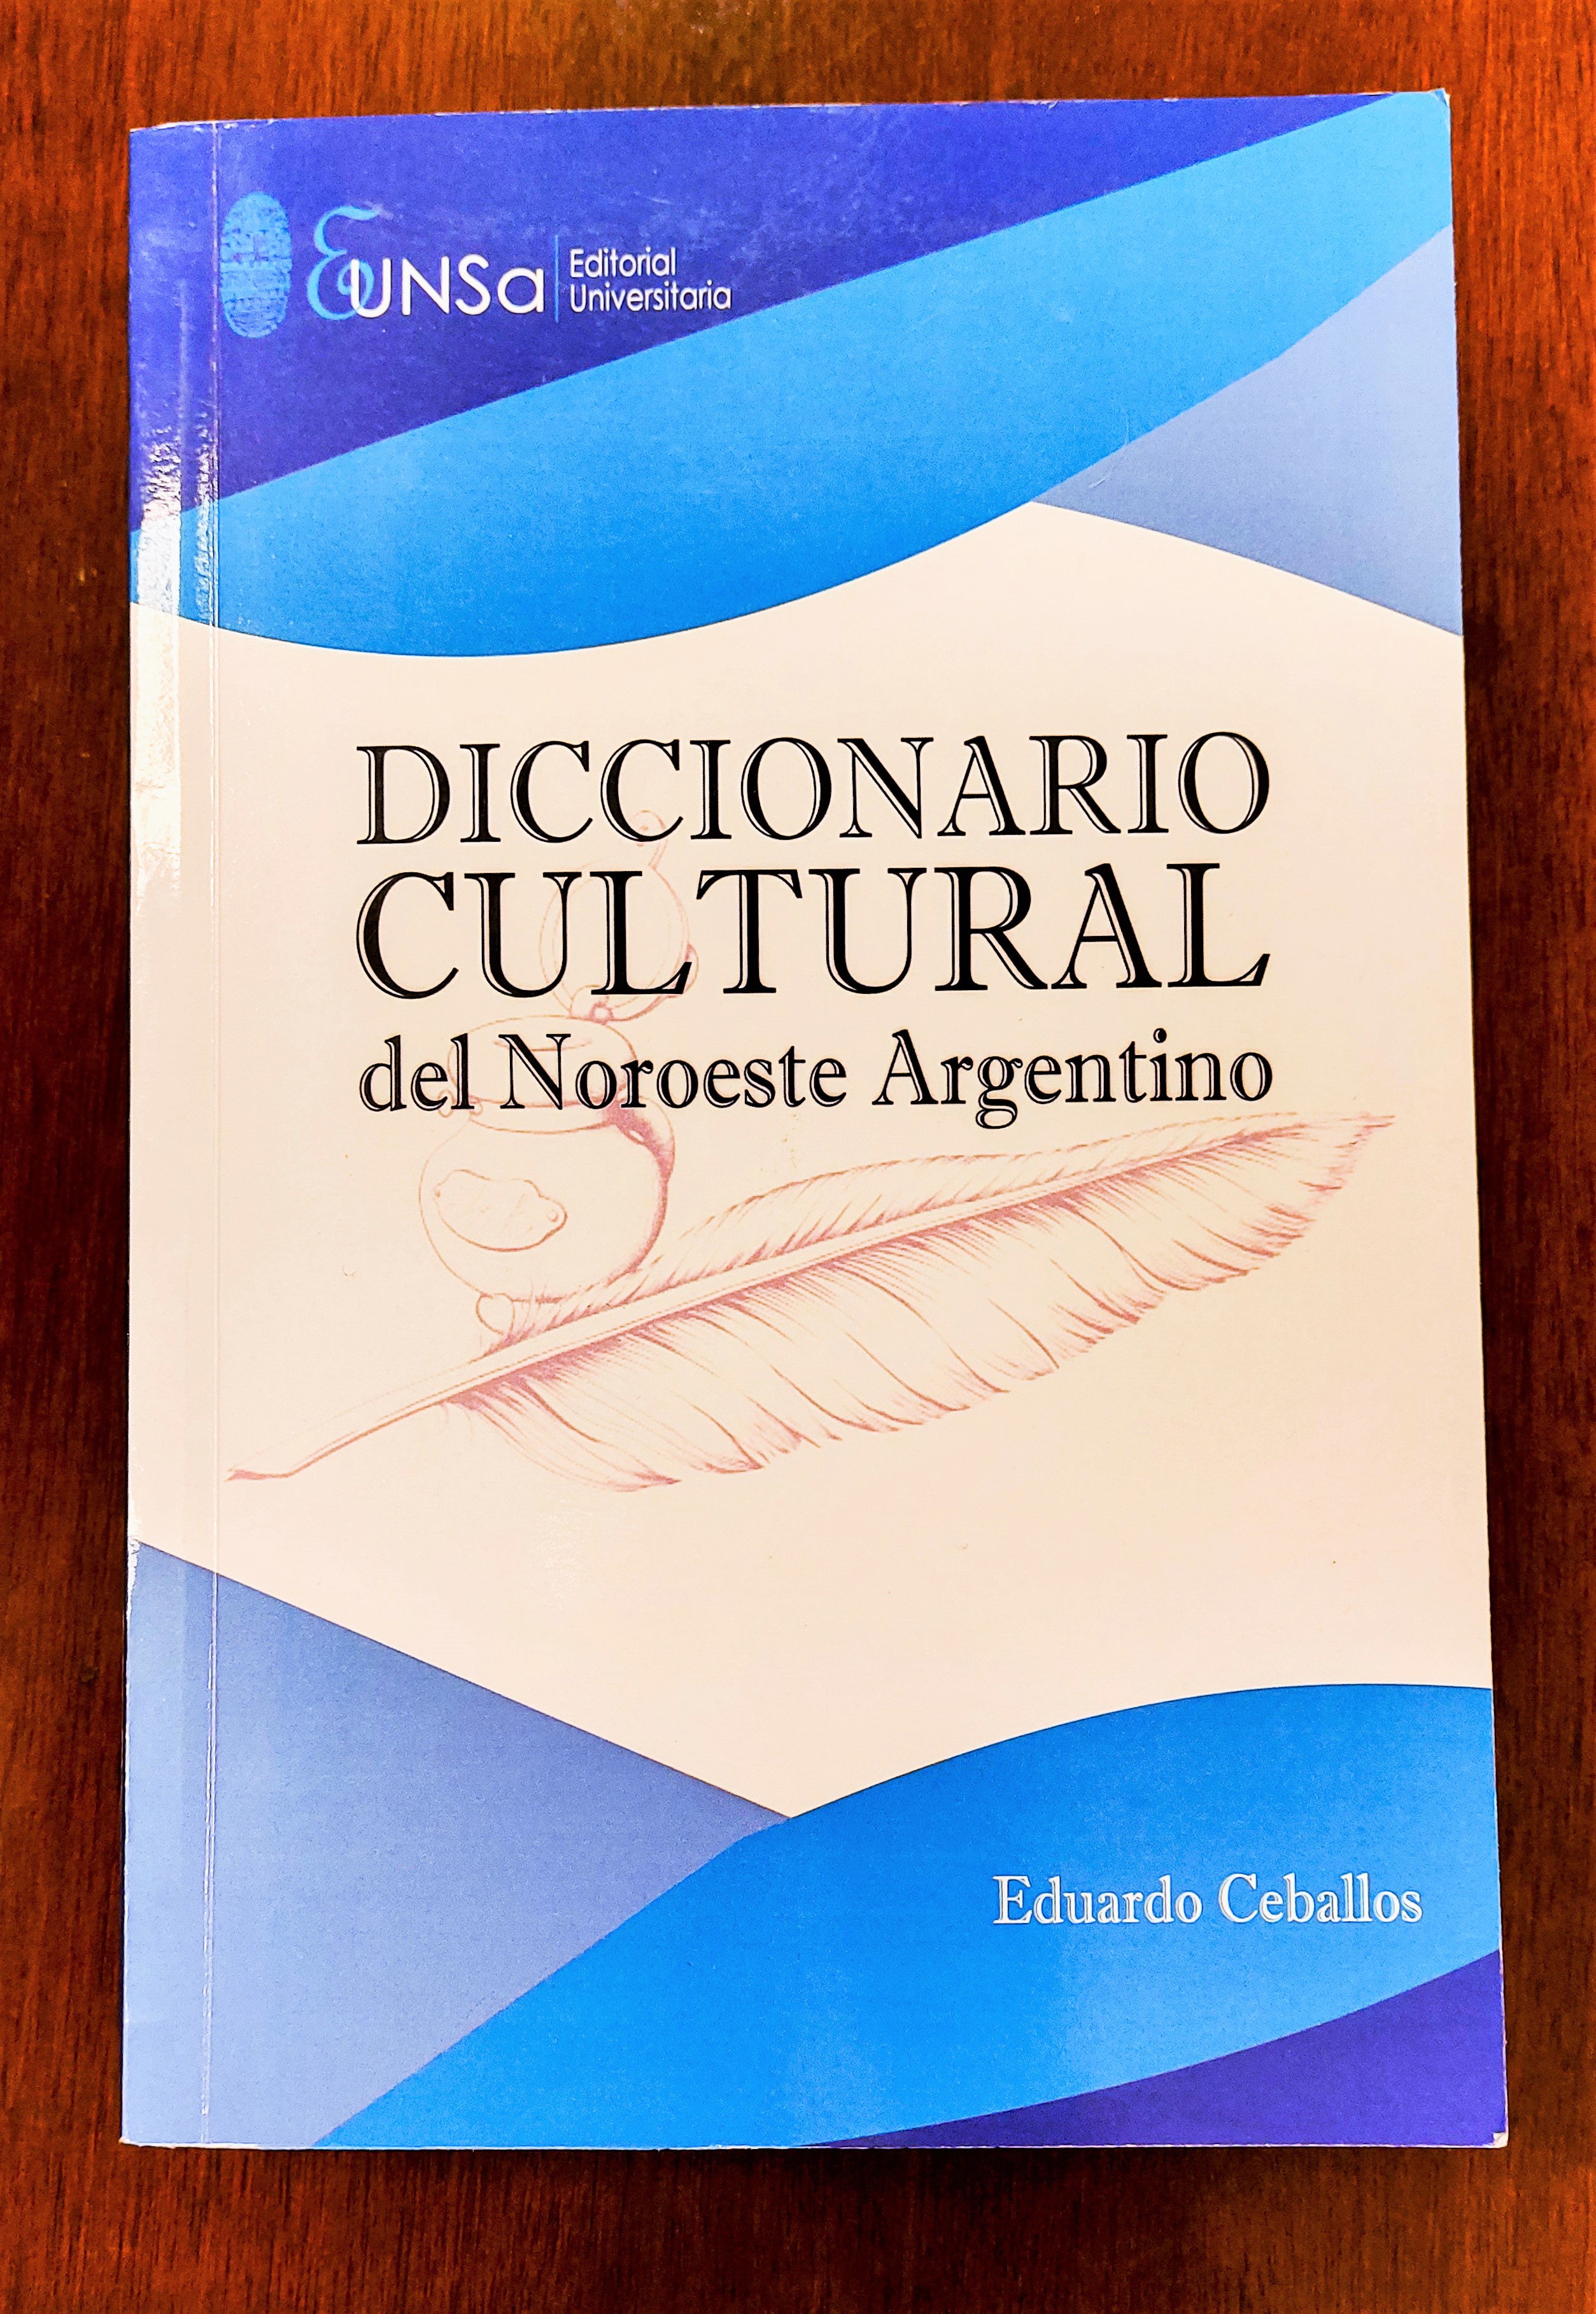 Diccionario Cultural del Noroeste Argentino en la Feria Internacional del Libro de Buenos Aires